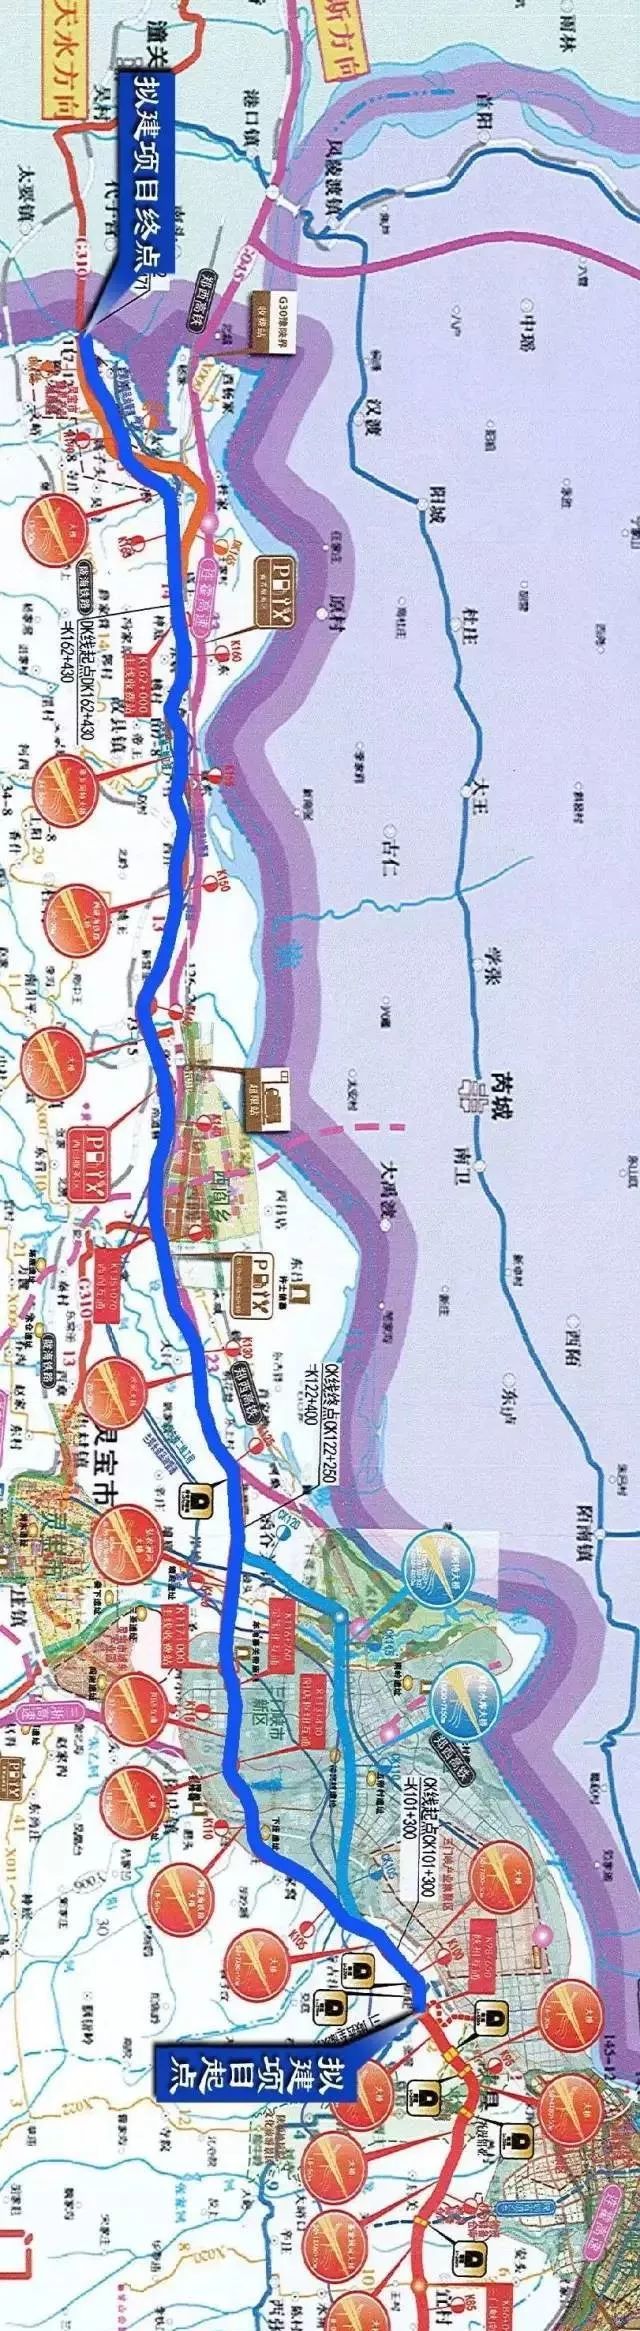 南卿村和朱家窝村之间, 在下庄村西依次跨越在建蒙华铁路和陇海铁路